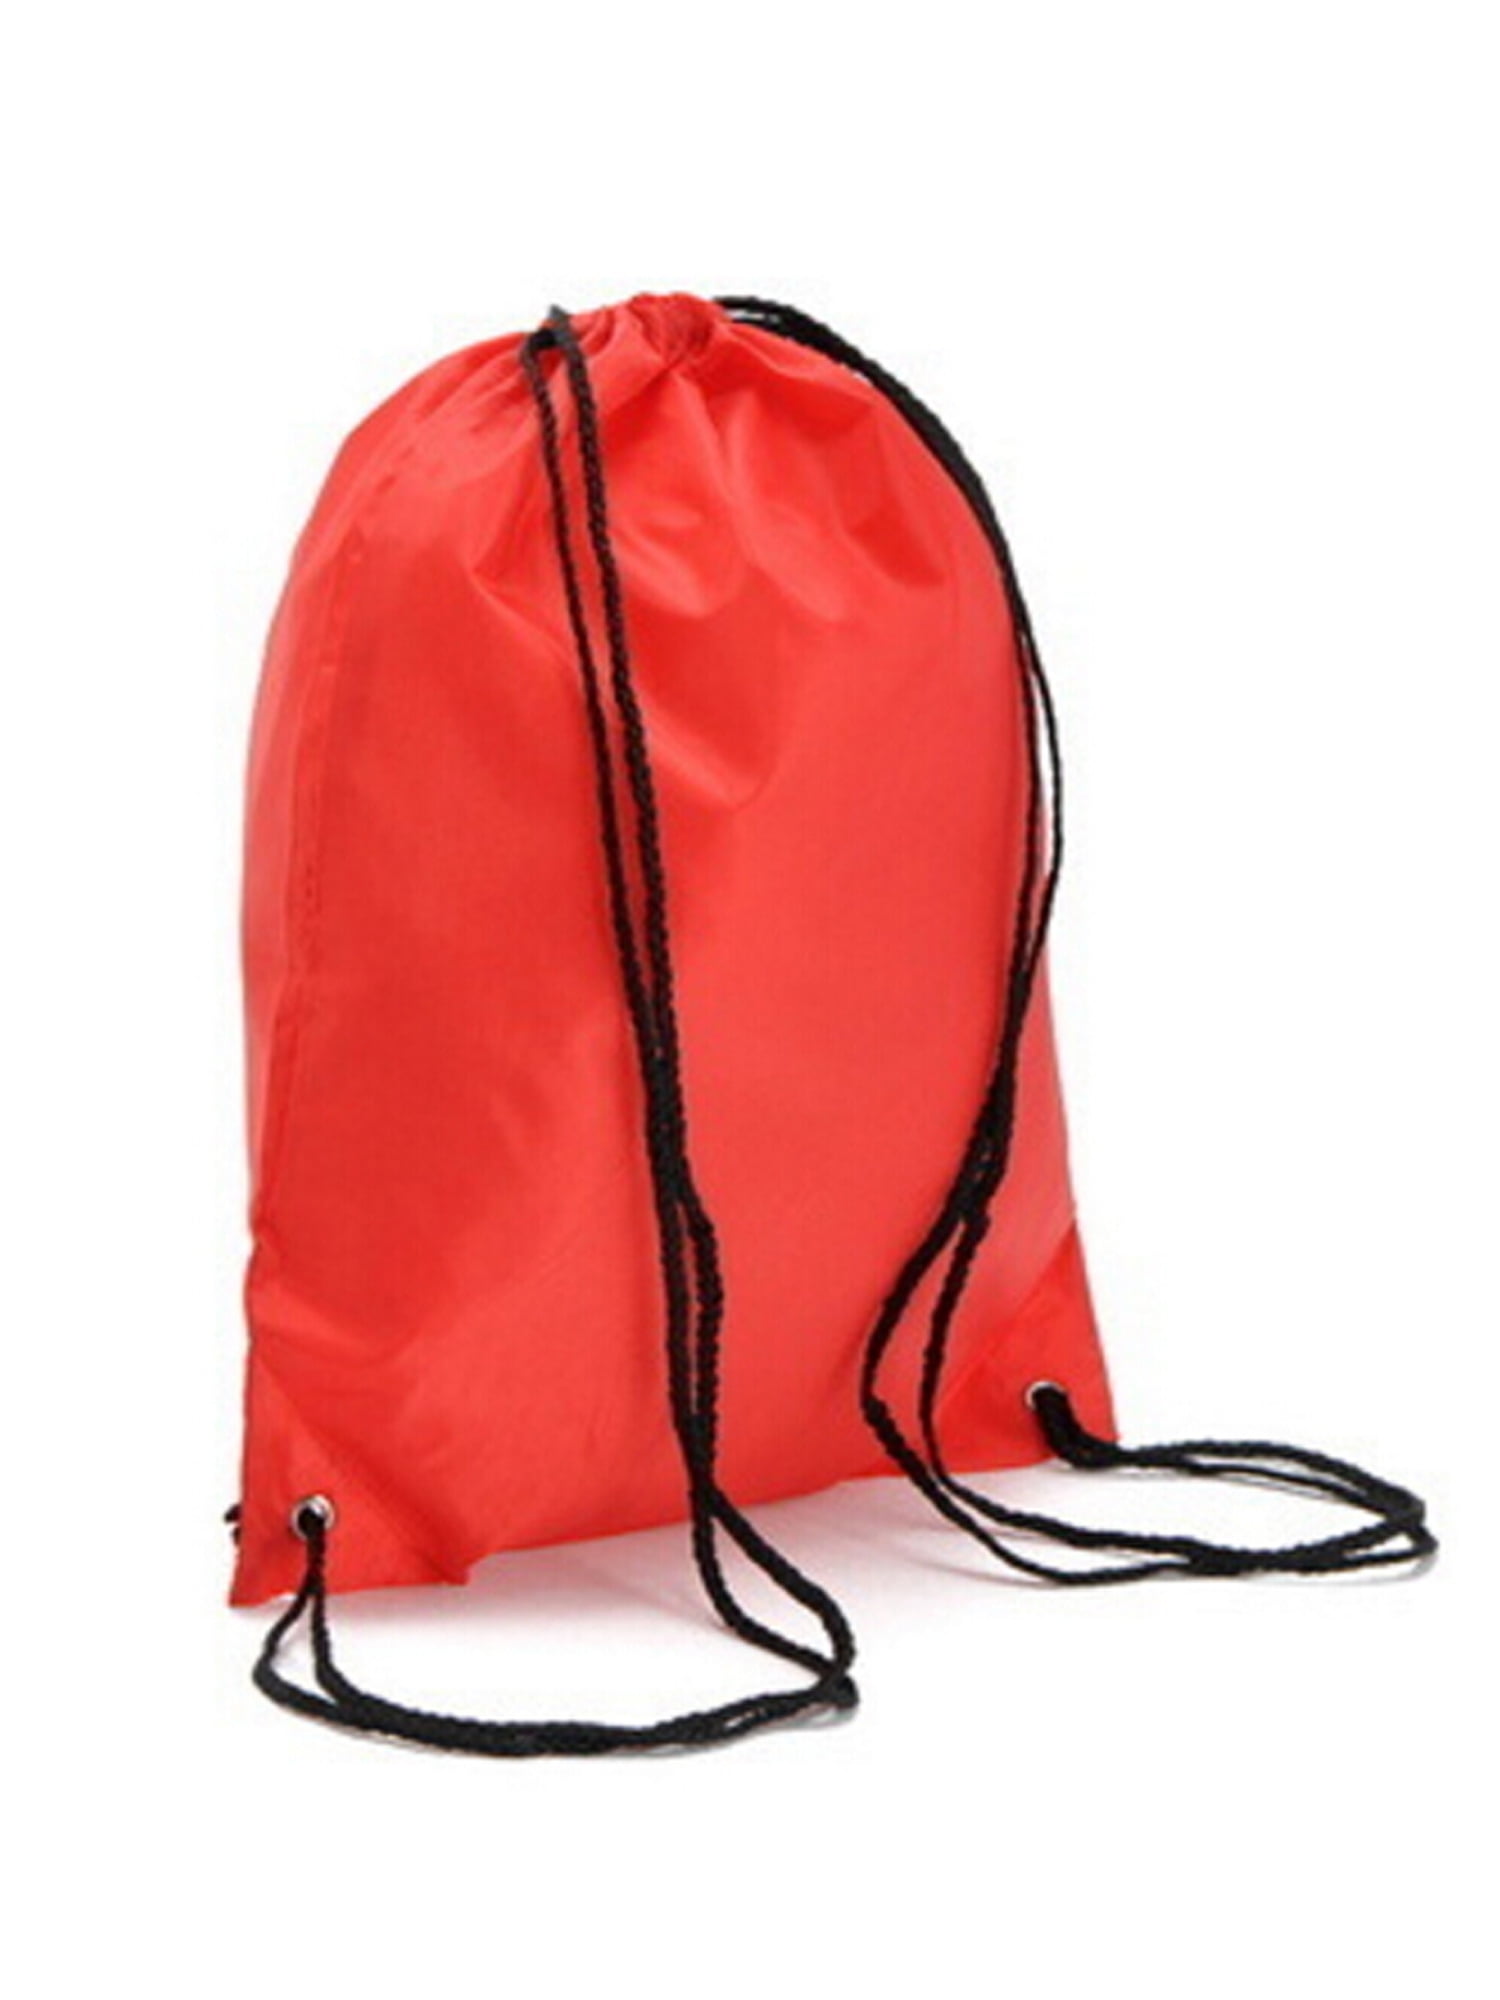 Waterproof Drawstring Backpack Cinch Sack String Bag Gym Tote School Sport Packs 